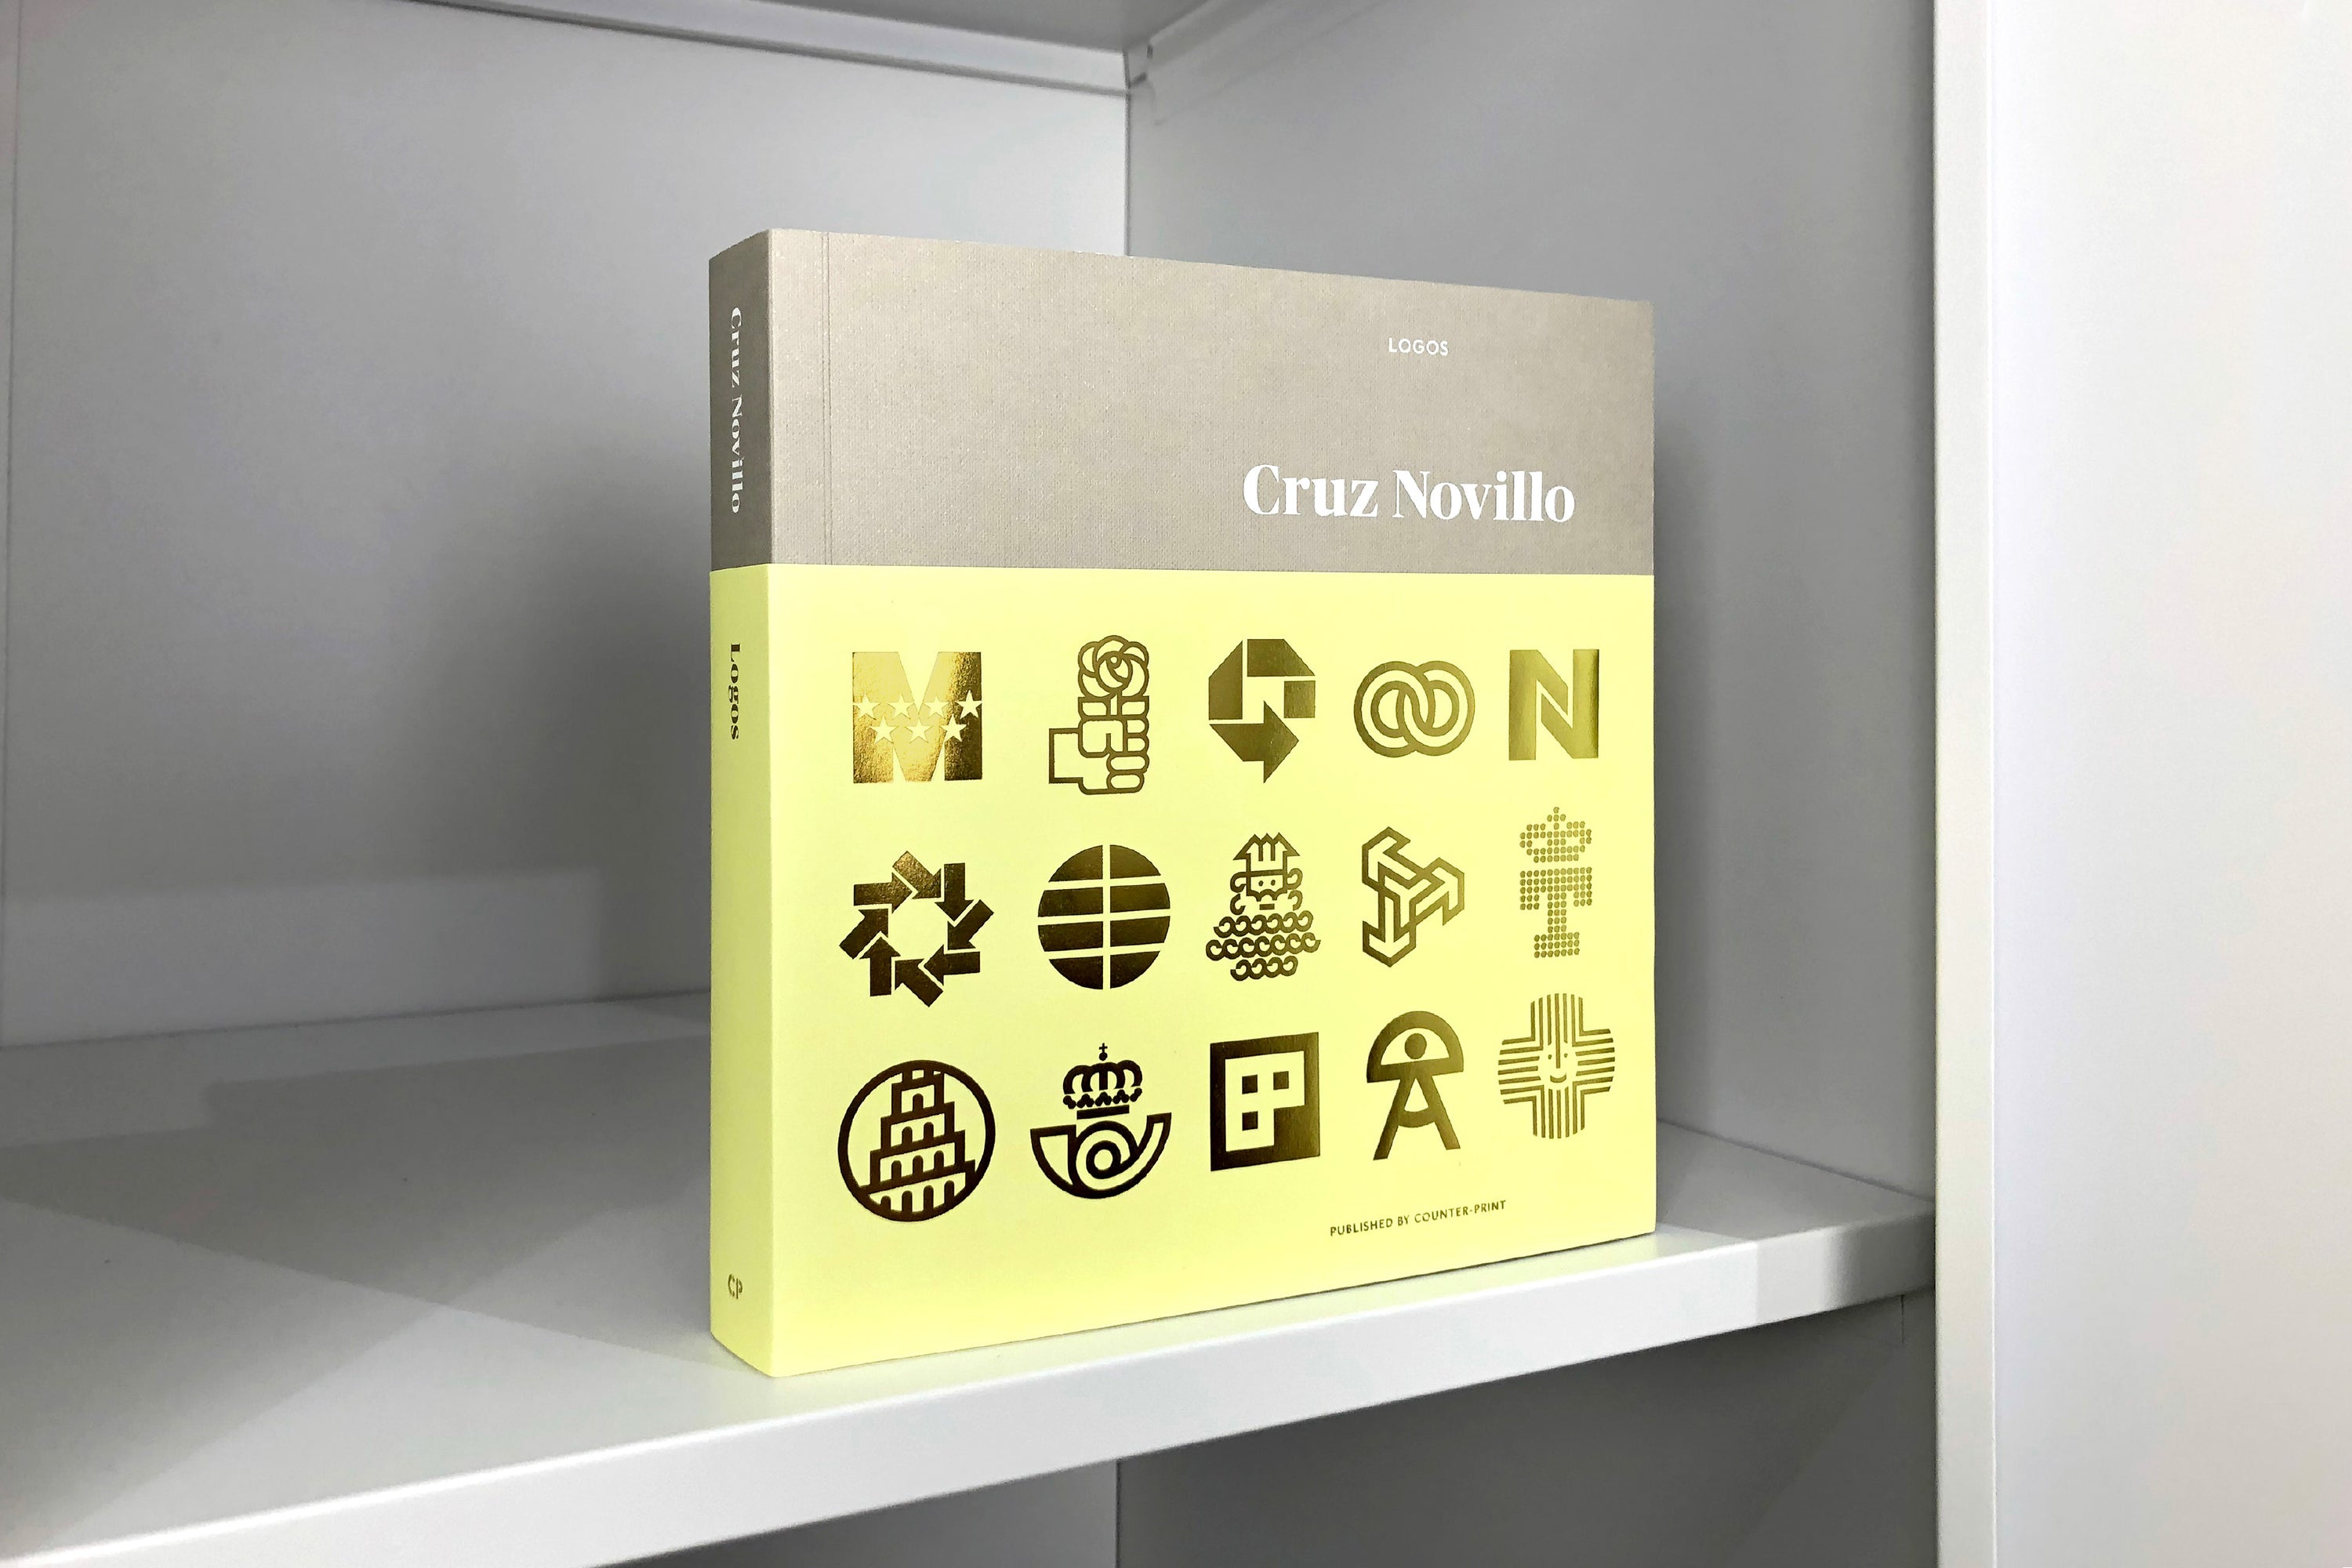 Reprinted – Cruz Novillo: Logos